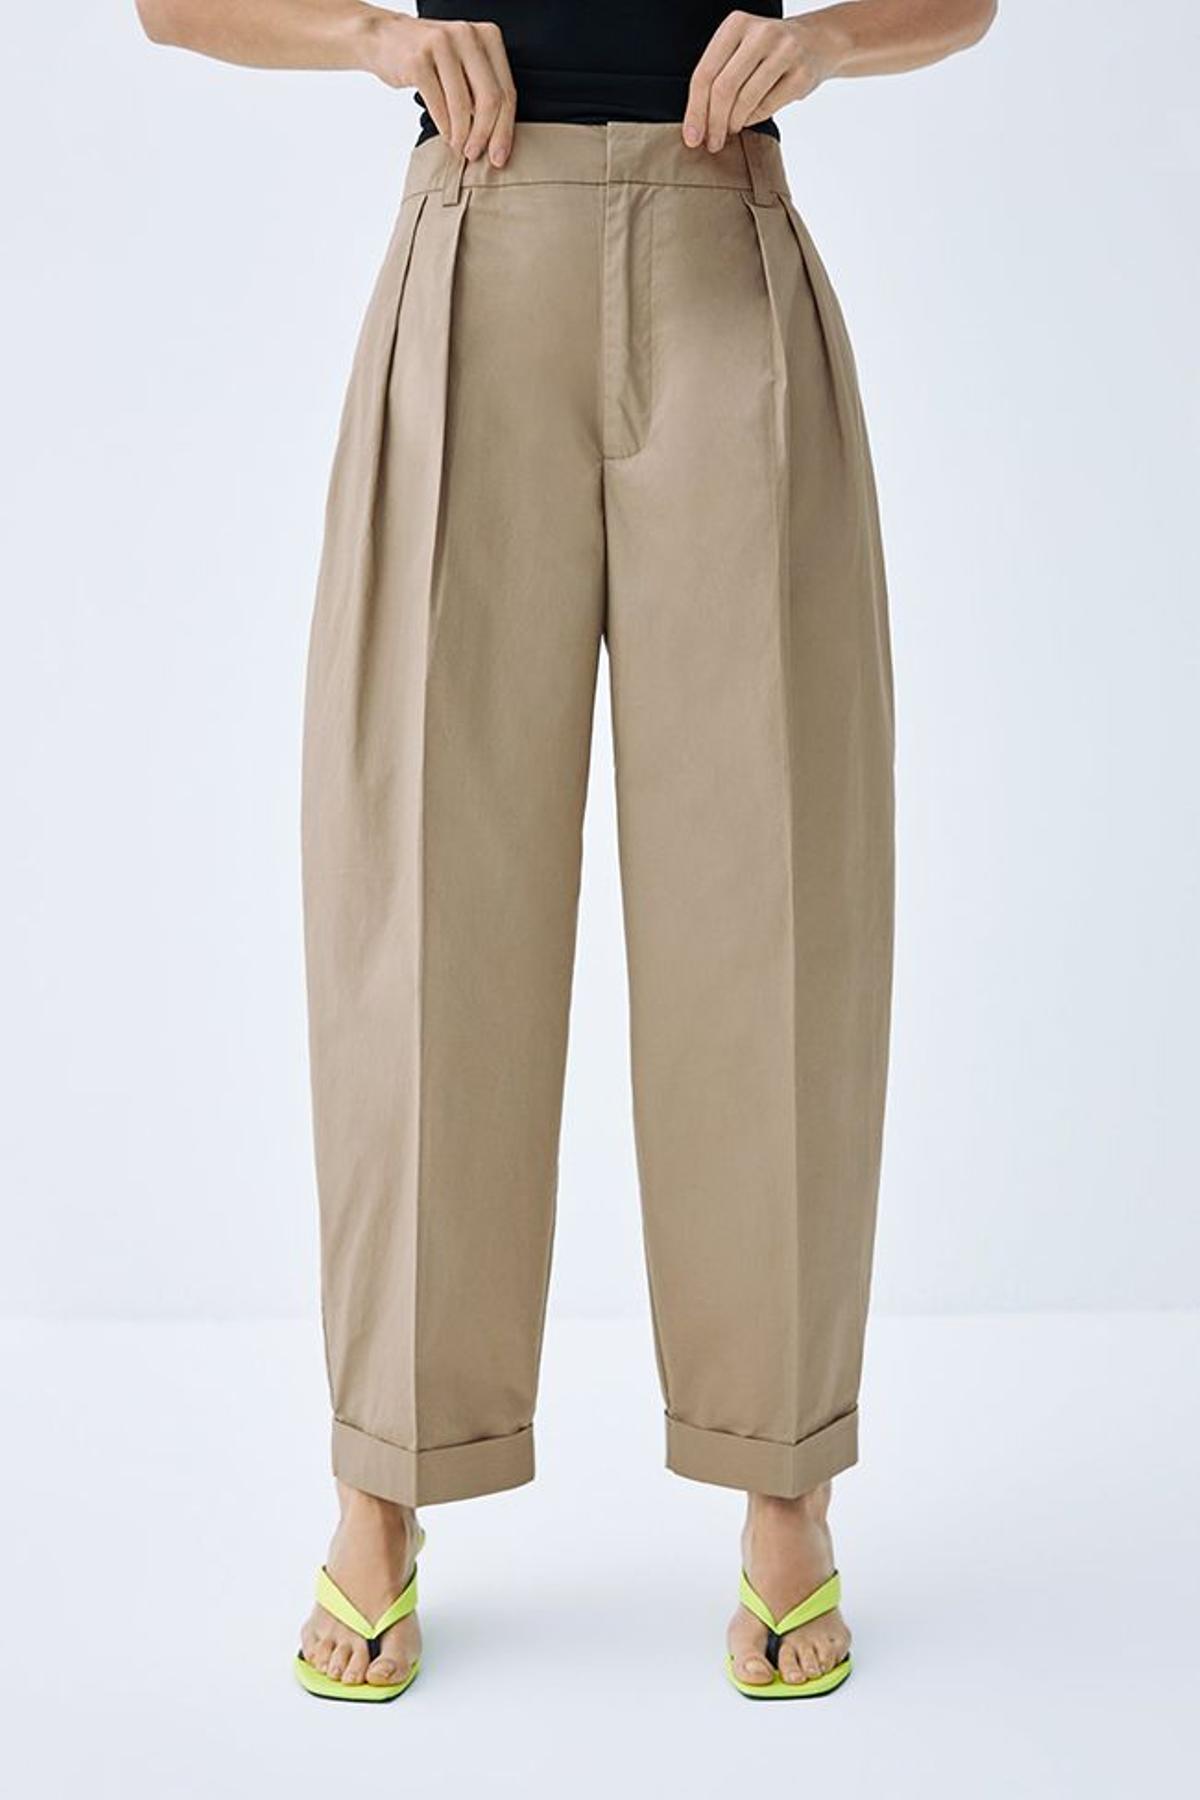 Pantalón de pinzas con bajo doblado, de Zara